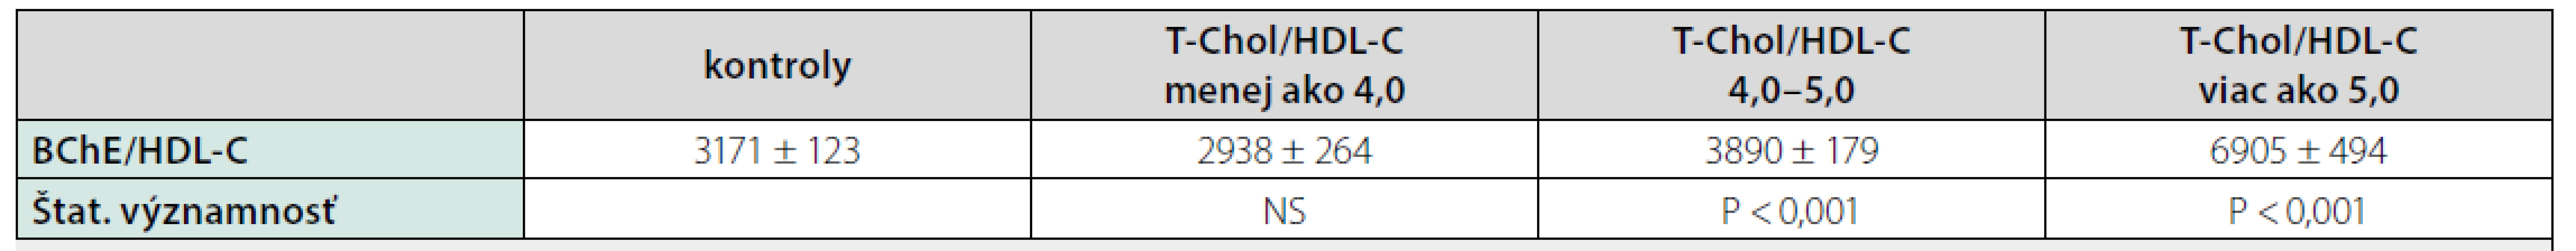 Hodnoty pomeru BChE/HDL-C u pacientov so steatózou pečene rozdelených podľa hodnoty pomeru T-Chol/HDL-C